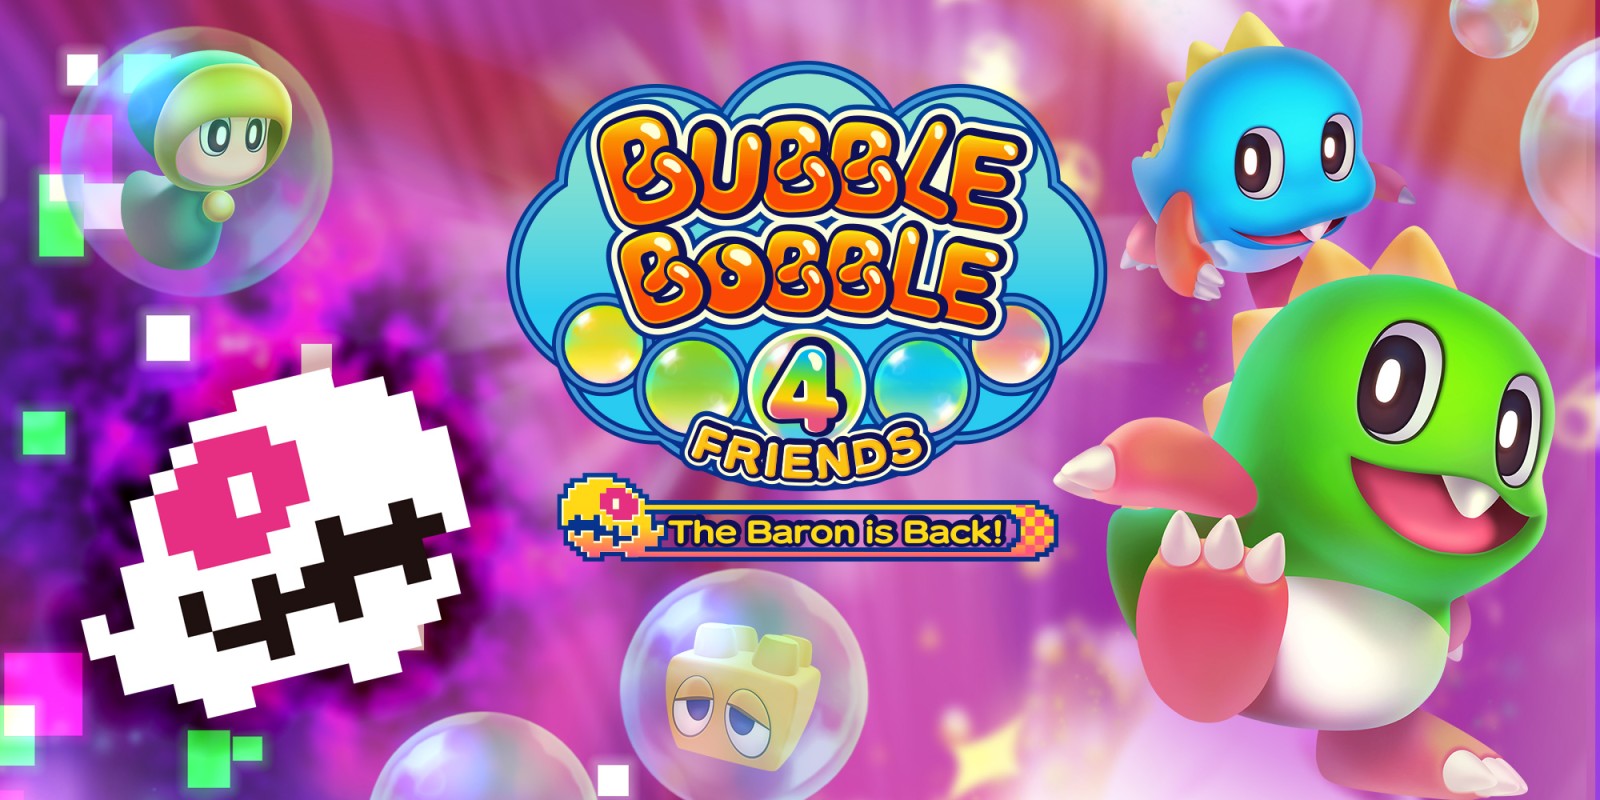 Bubble Bobble 4 Friends | Nintendo 